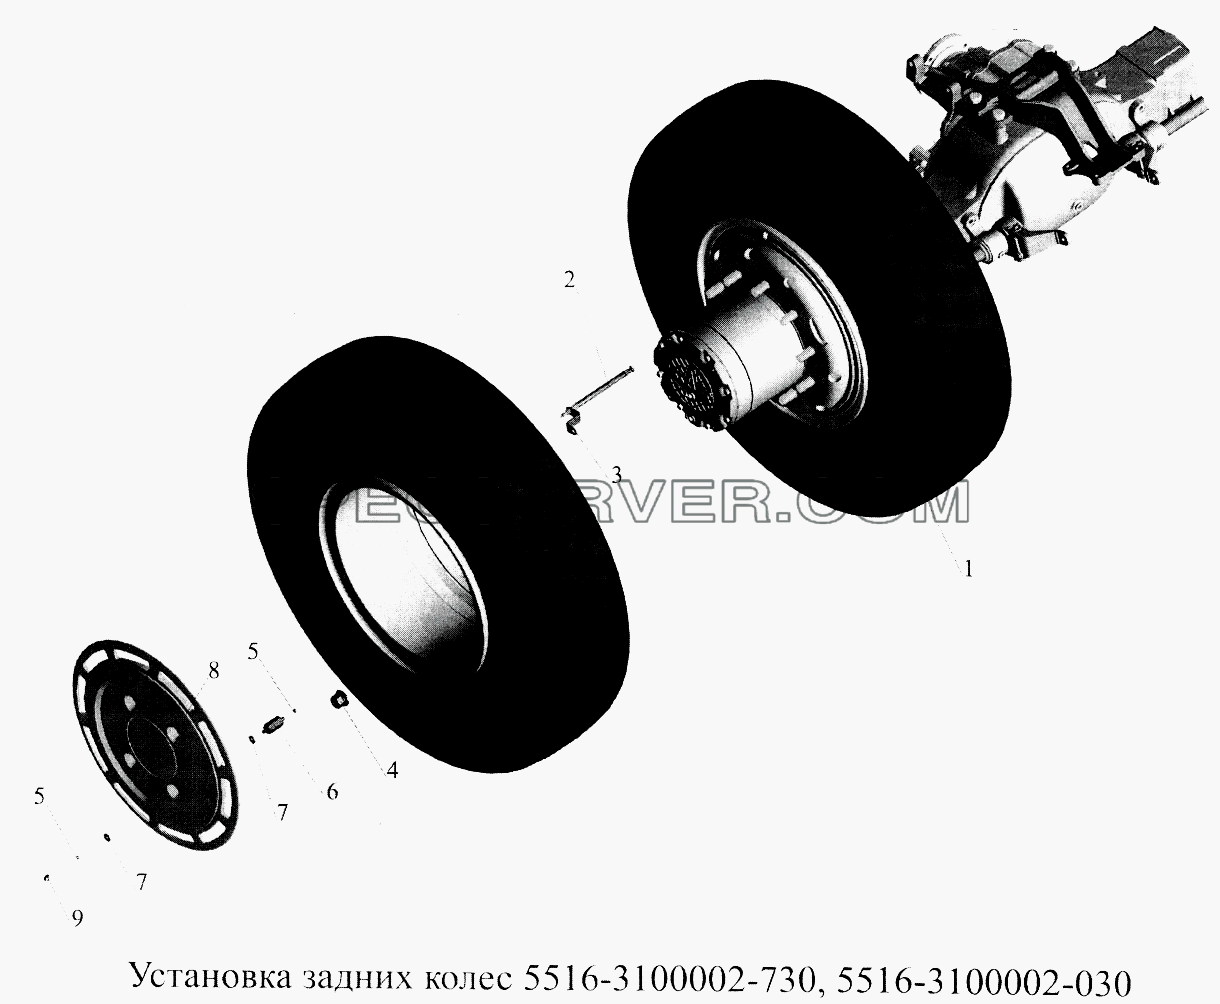 Установка задних колес 5516-3100002-730, 5516-3100002-030 для МАЗ-5516А5 (список запасных частей)